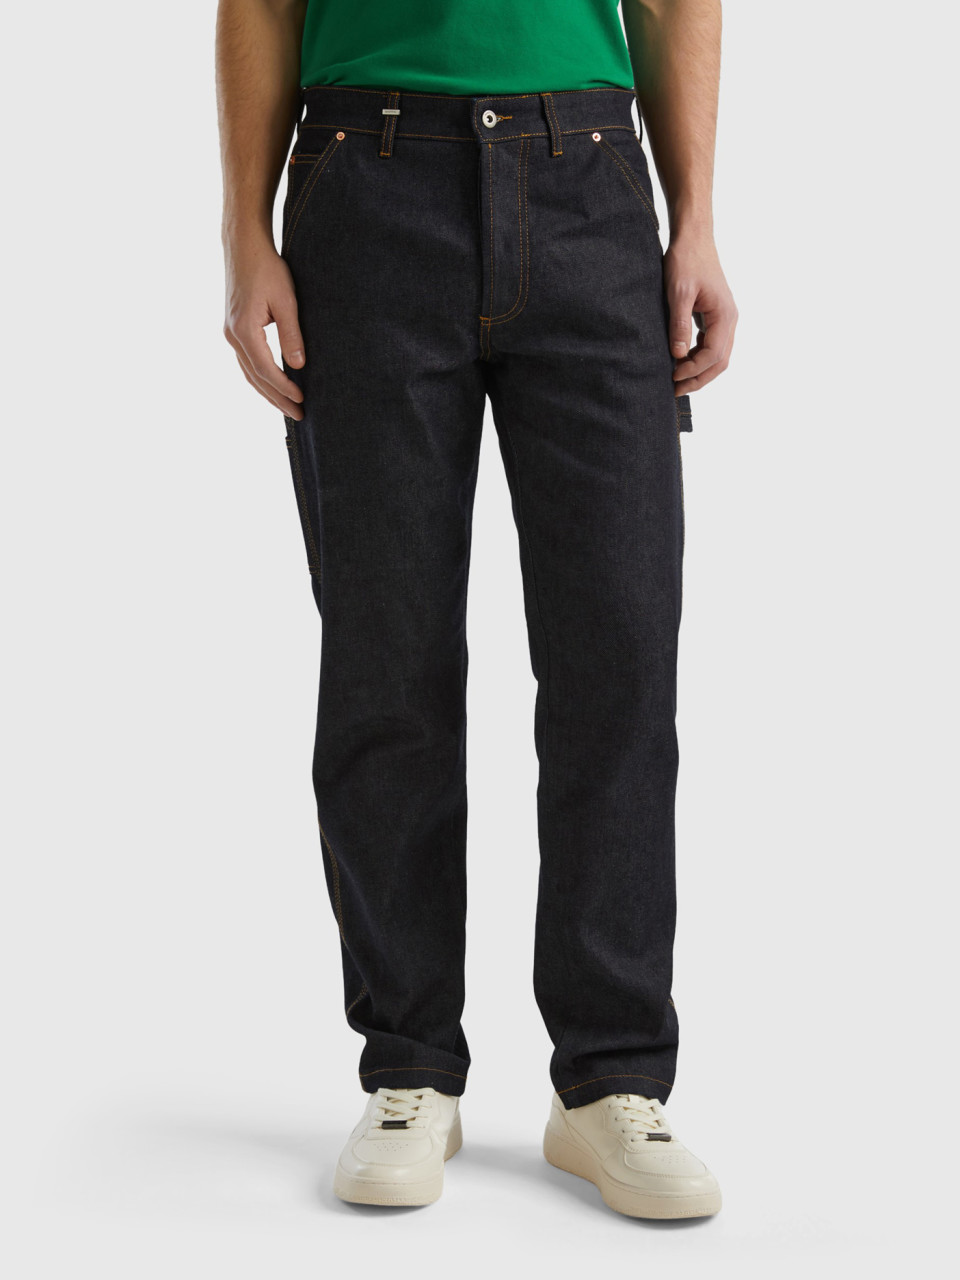 Benetton, Jeans Worker-style, Dunkelblau, male